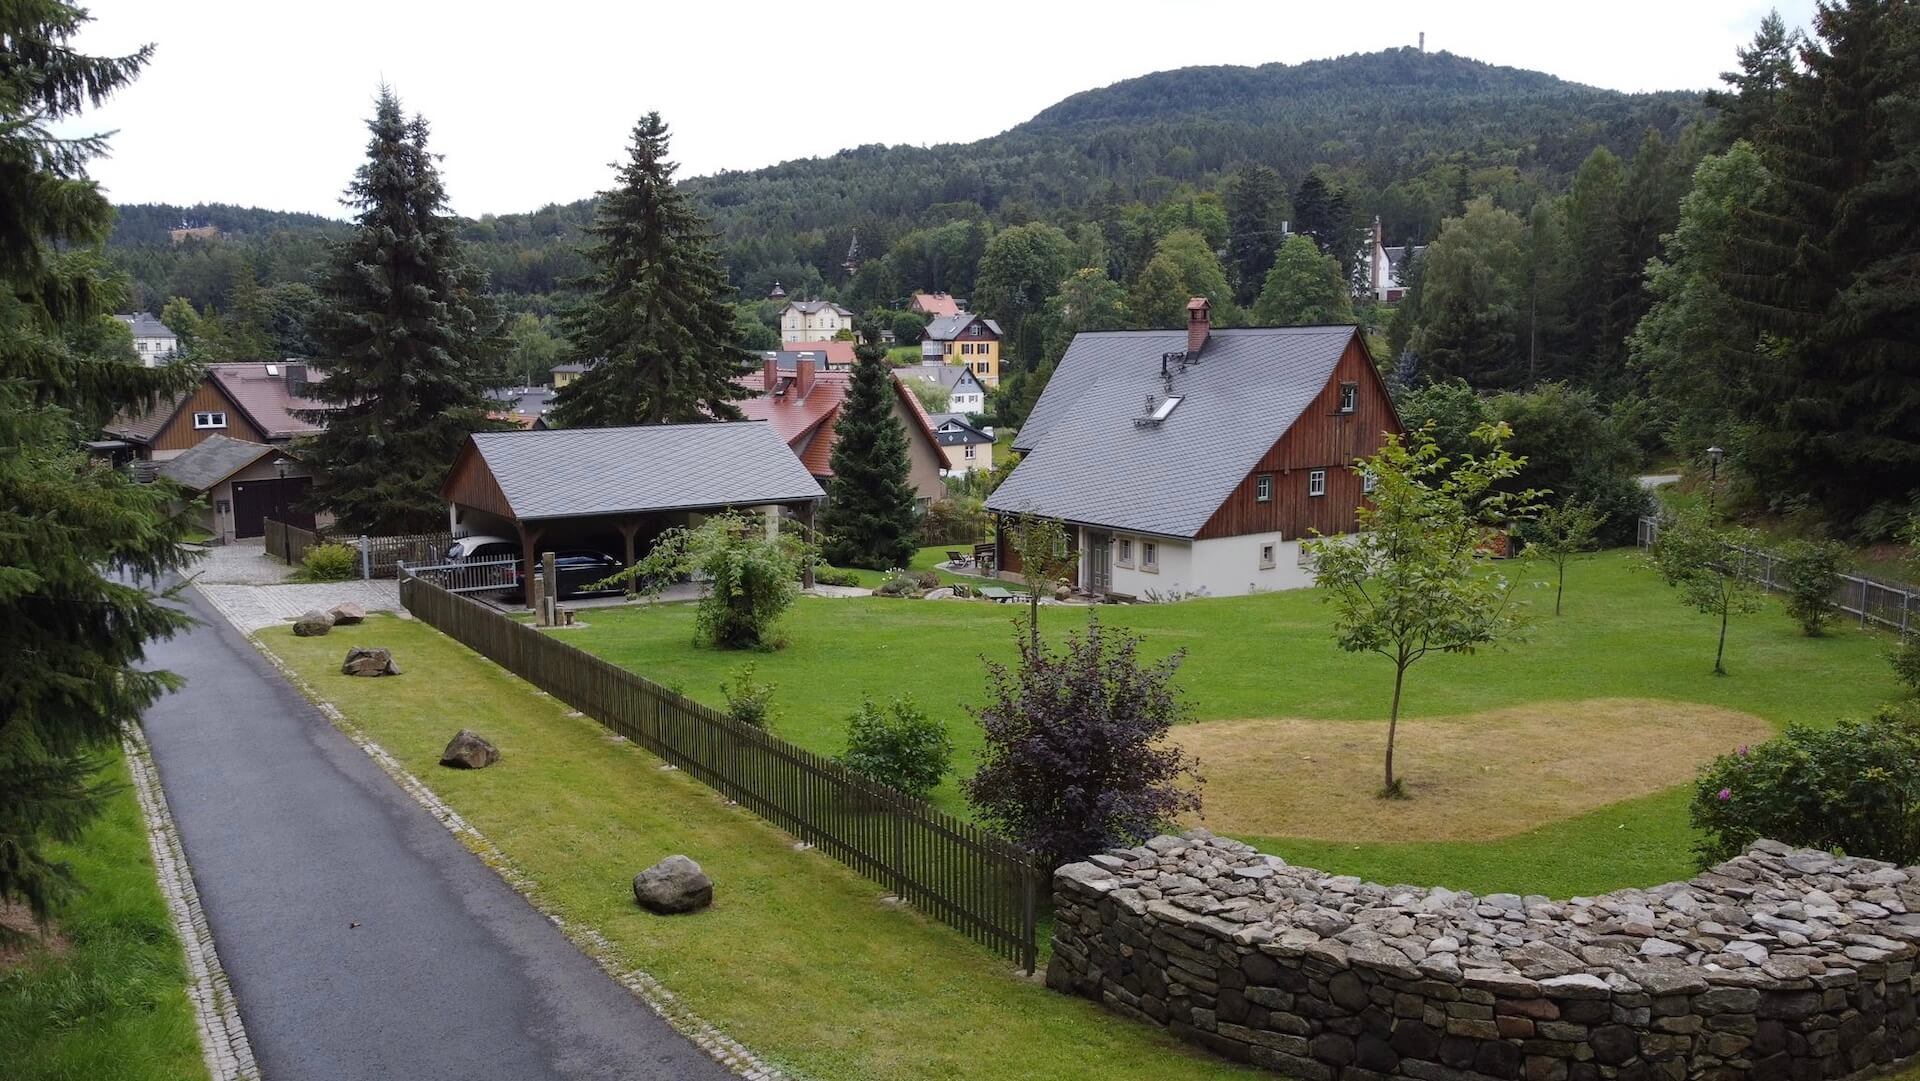 Ferienhaus mit Carport und Blick zum Hochwald